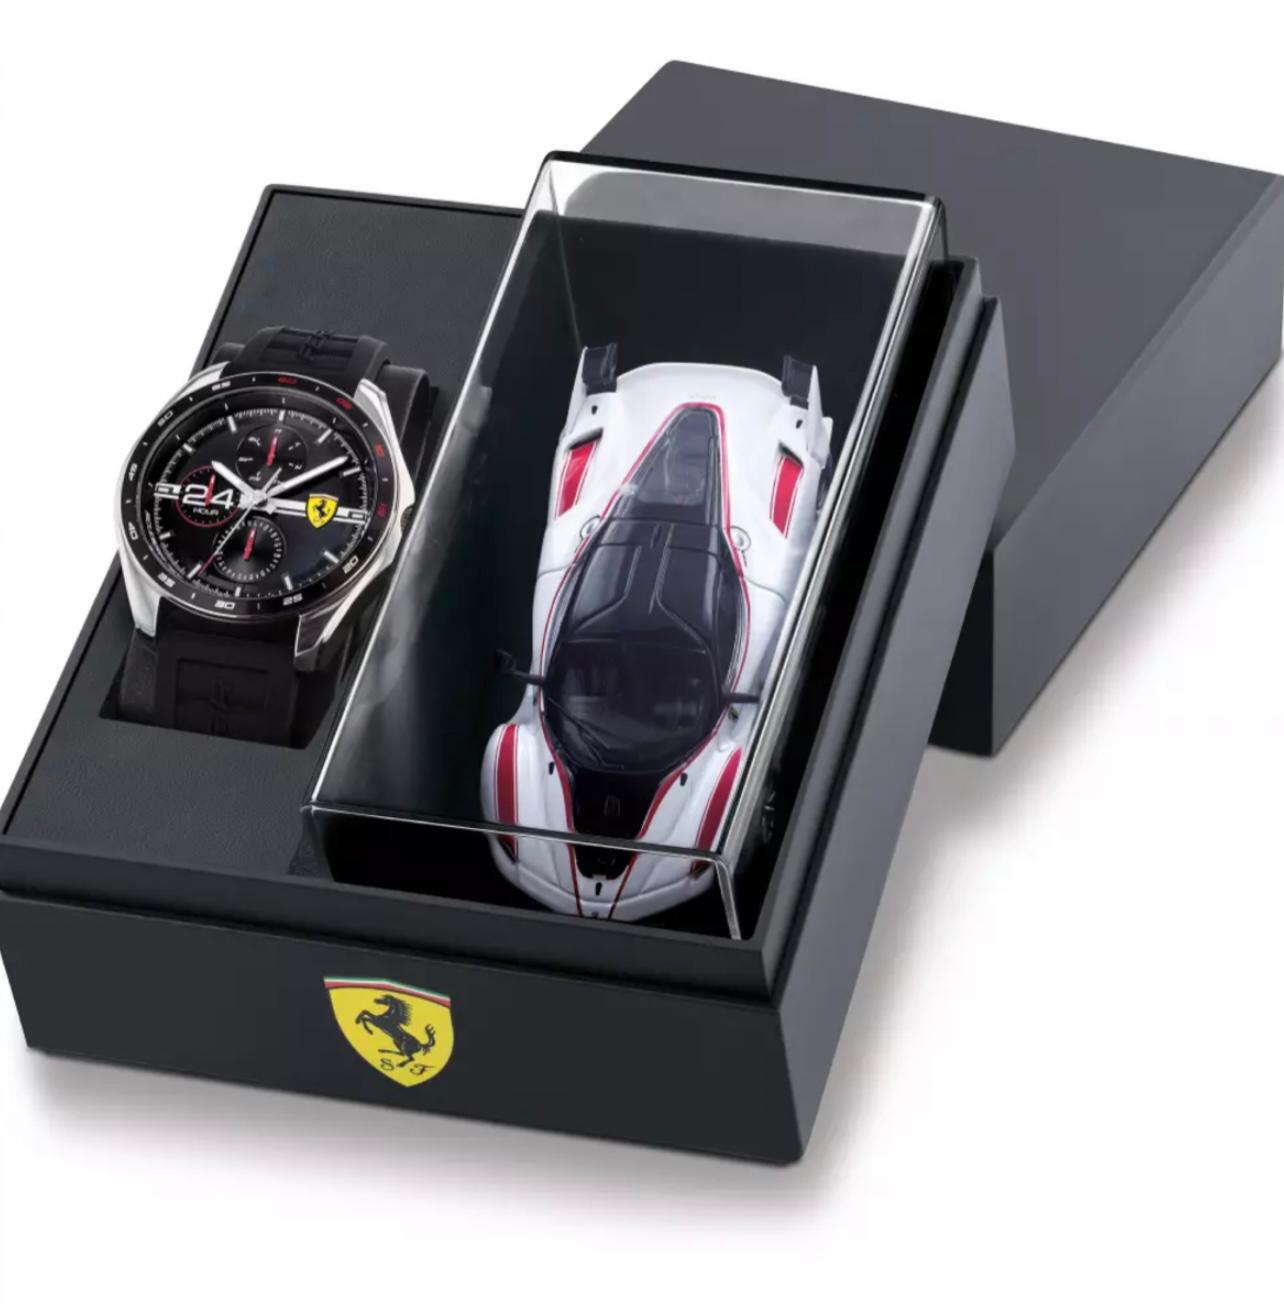 Orologio Scuderia Ferrari Speedracer - Gioielleri Iarlori